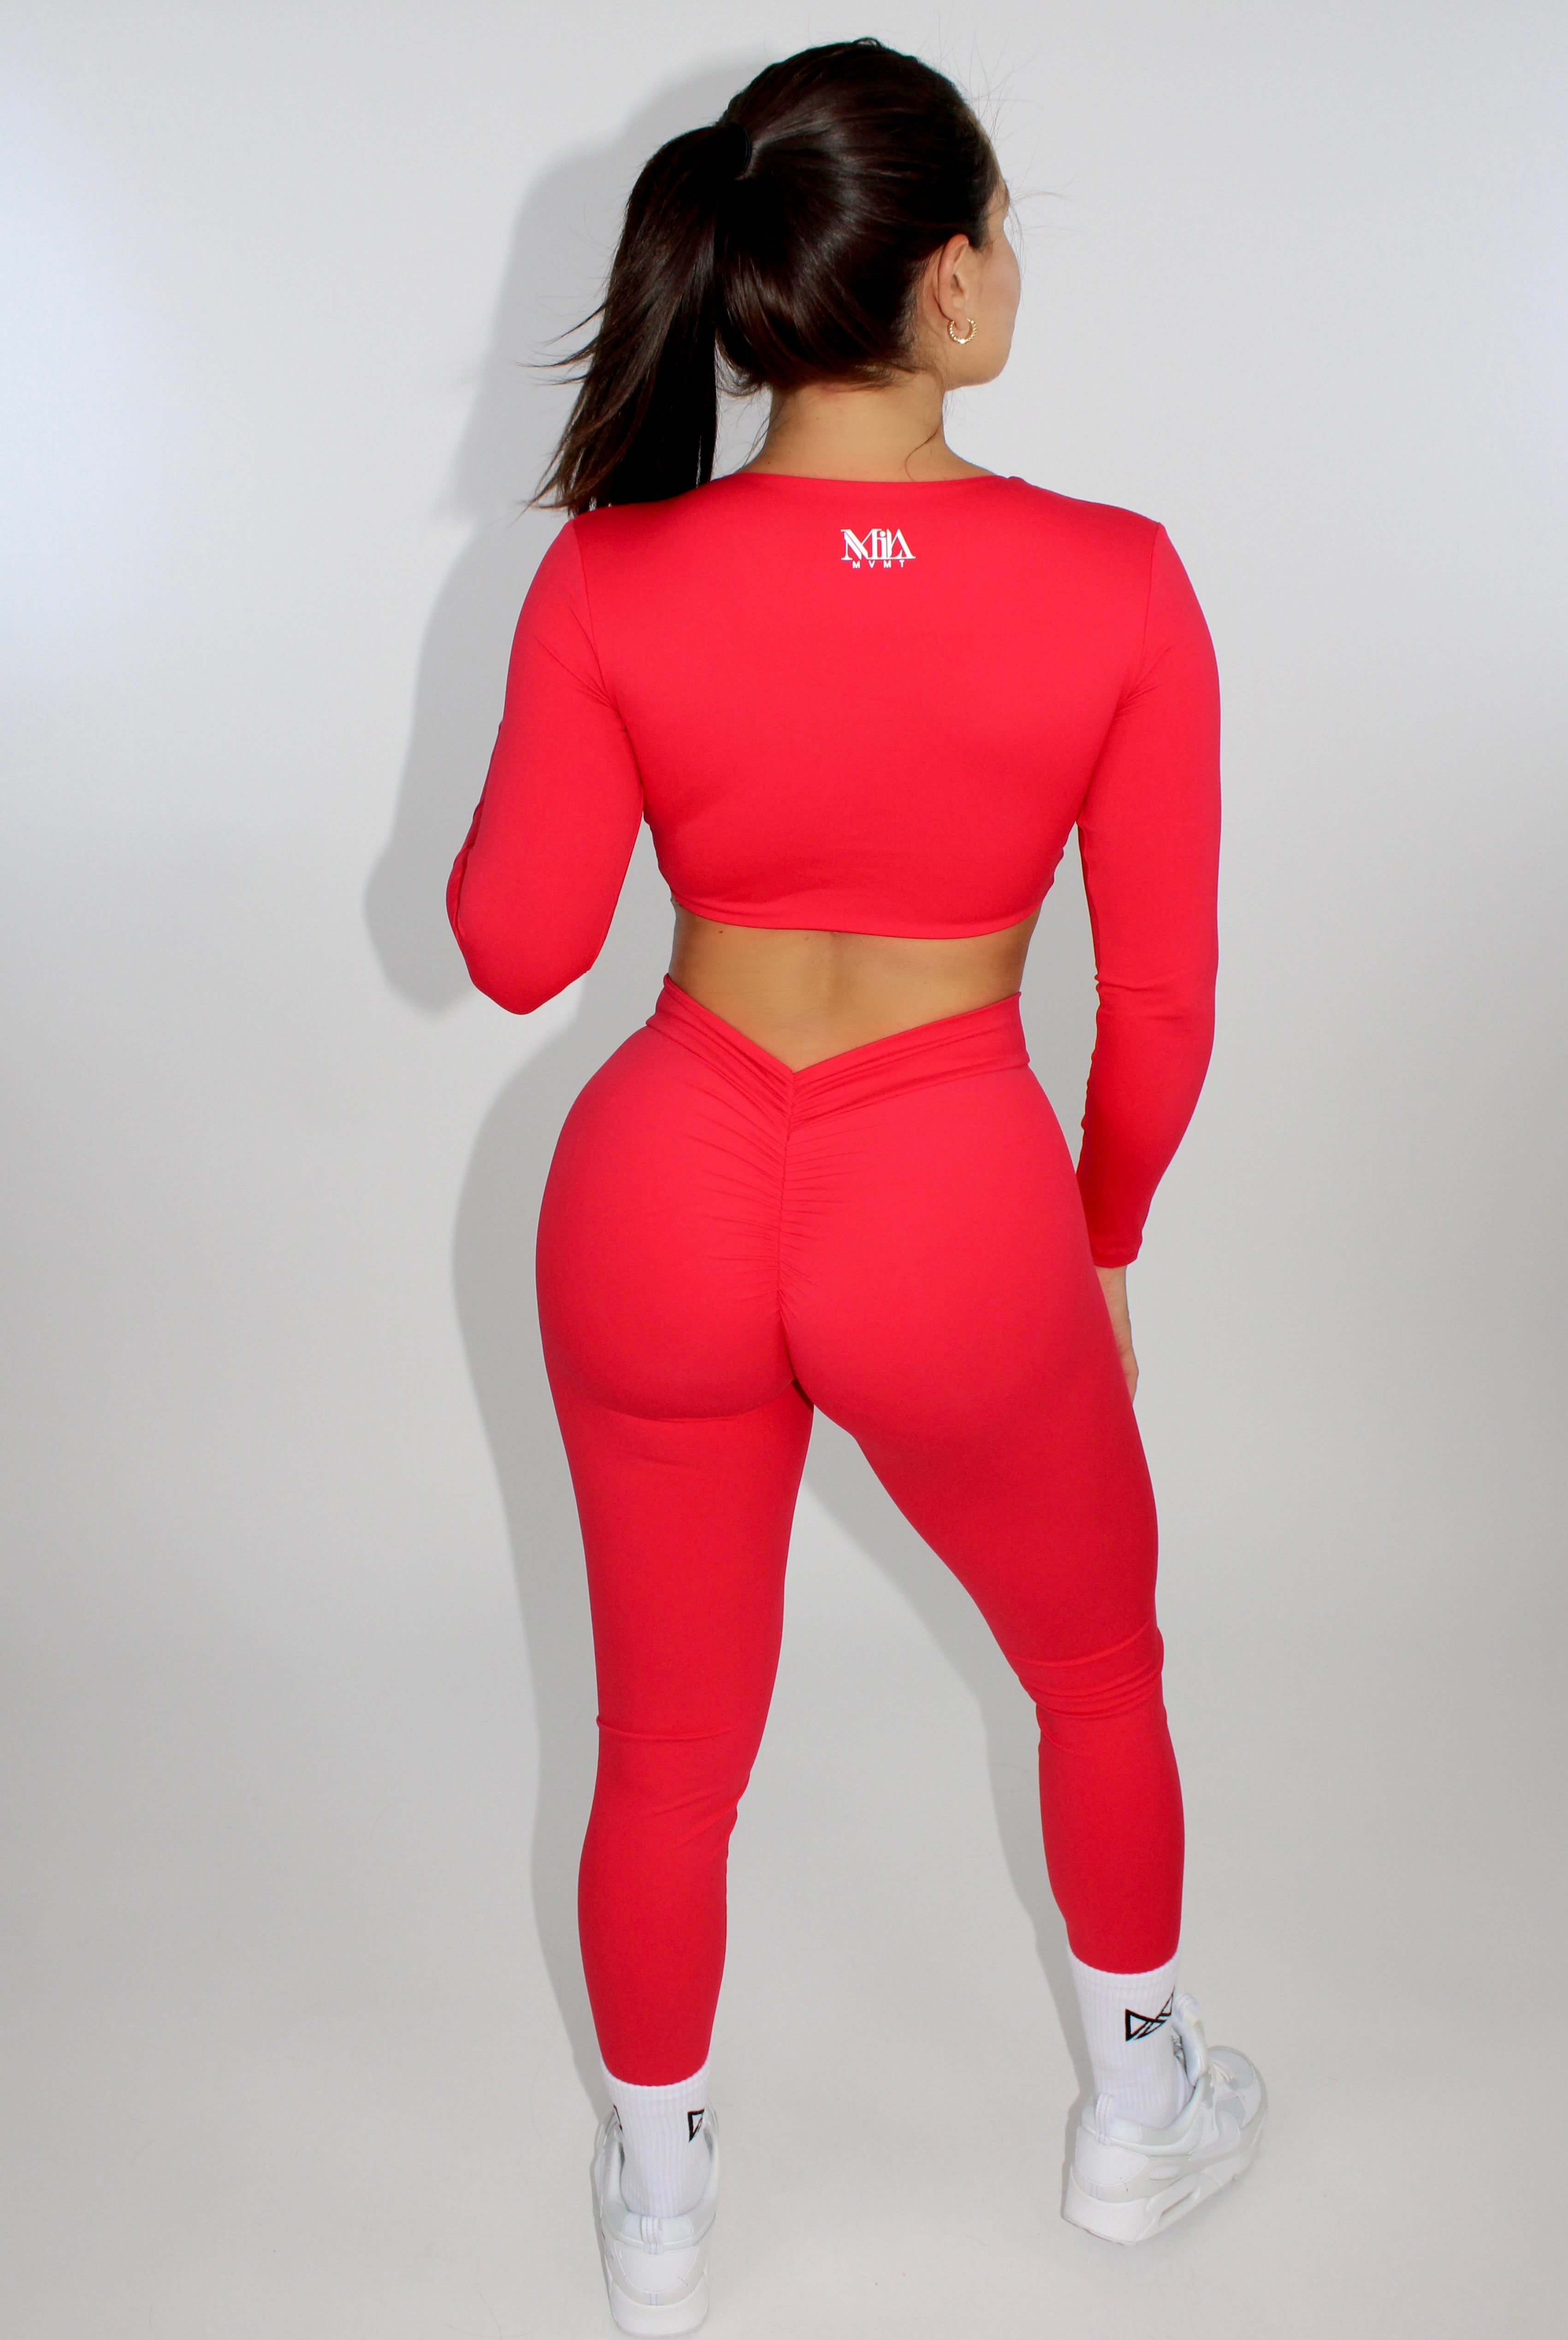 MILA MVMT Sportswear Long Sleeve Crop Top Gymwear Athleisure Sports Bra in Scarlet Red - model facing back